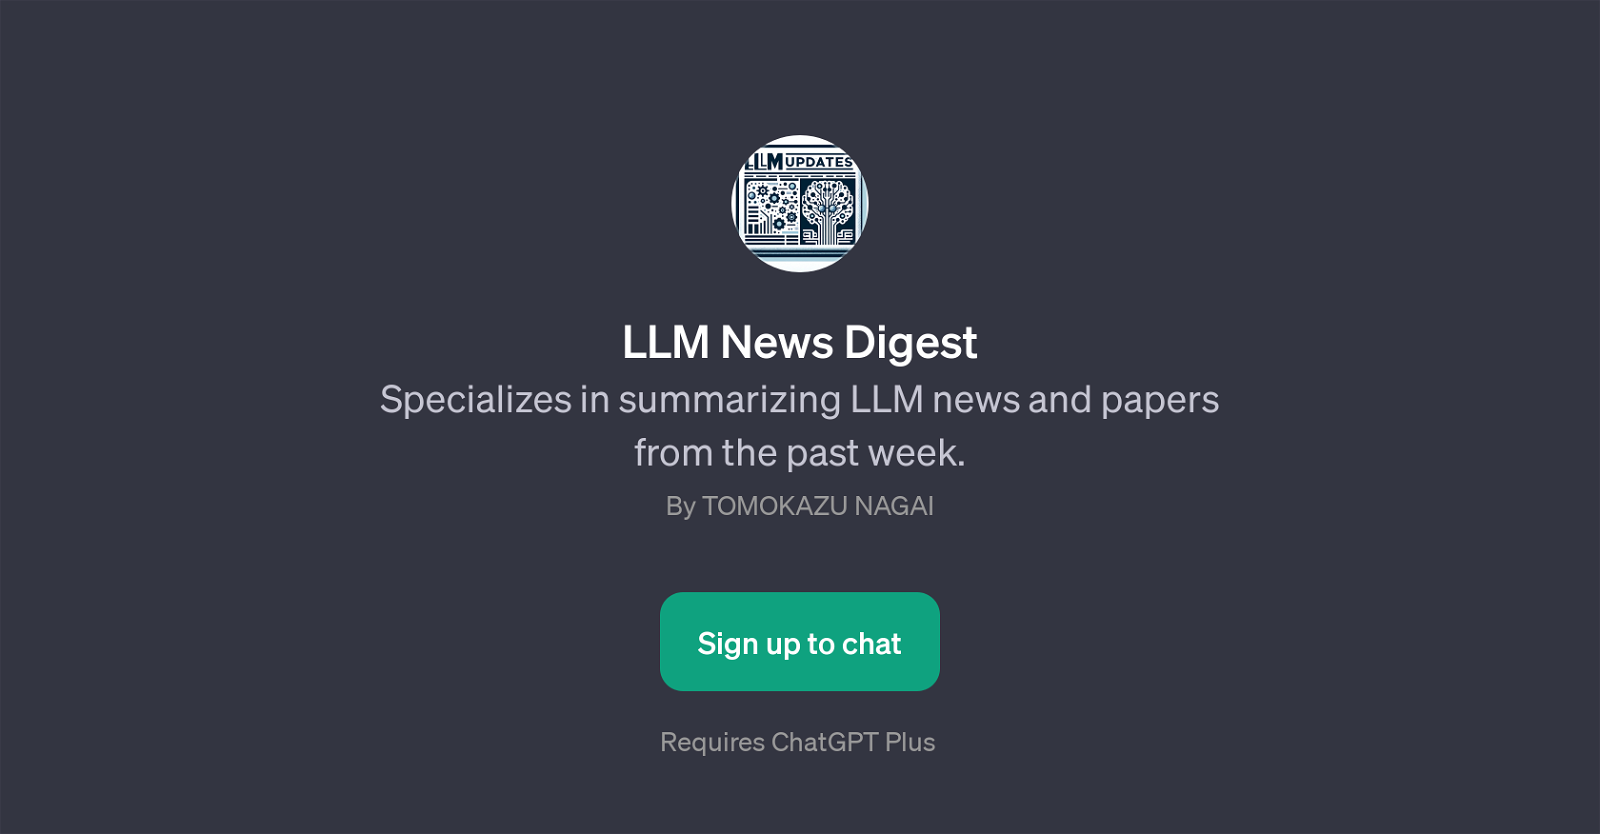 LLM News Digest website